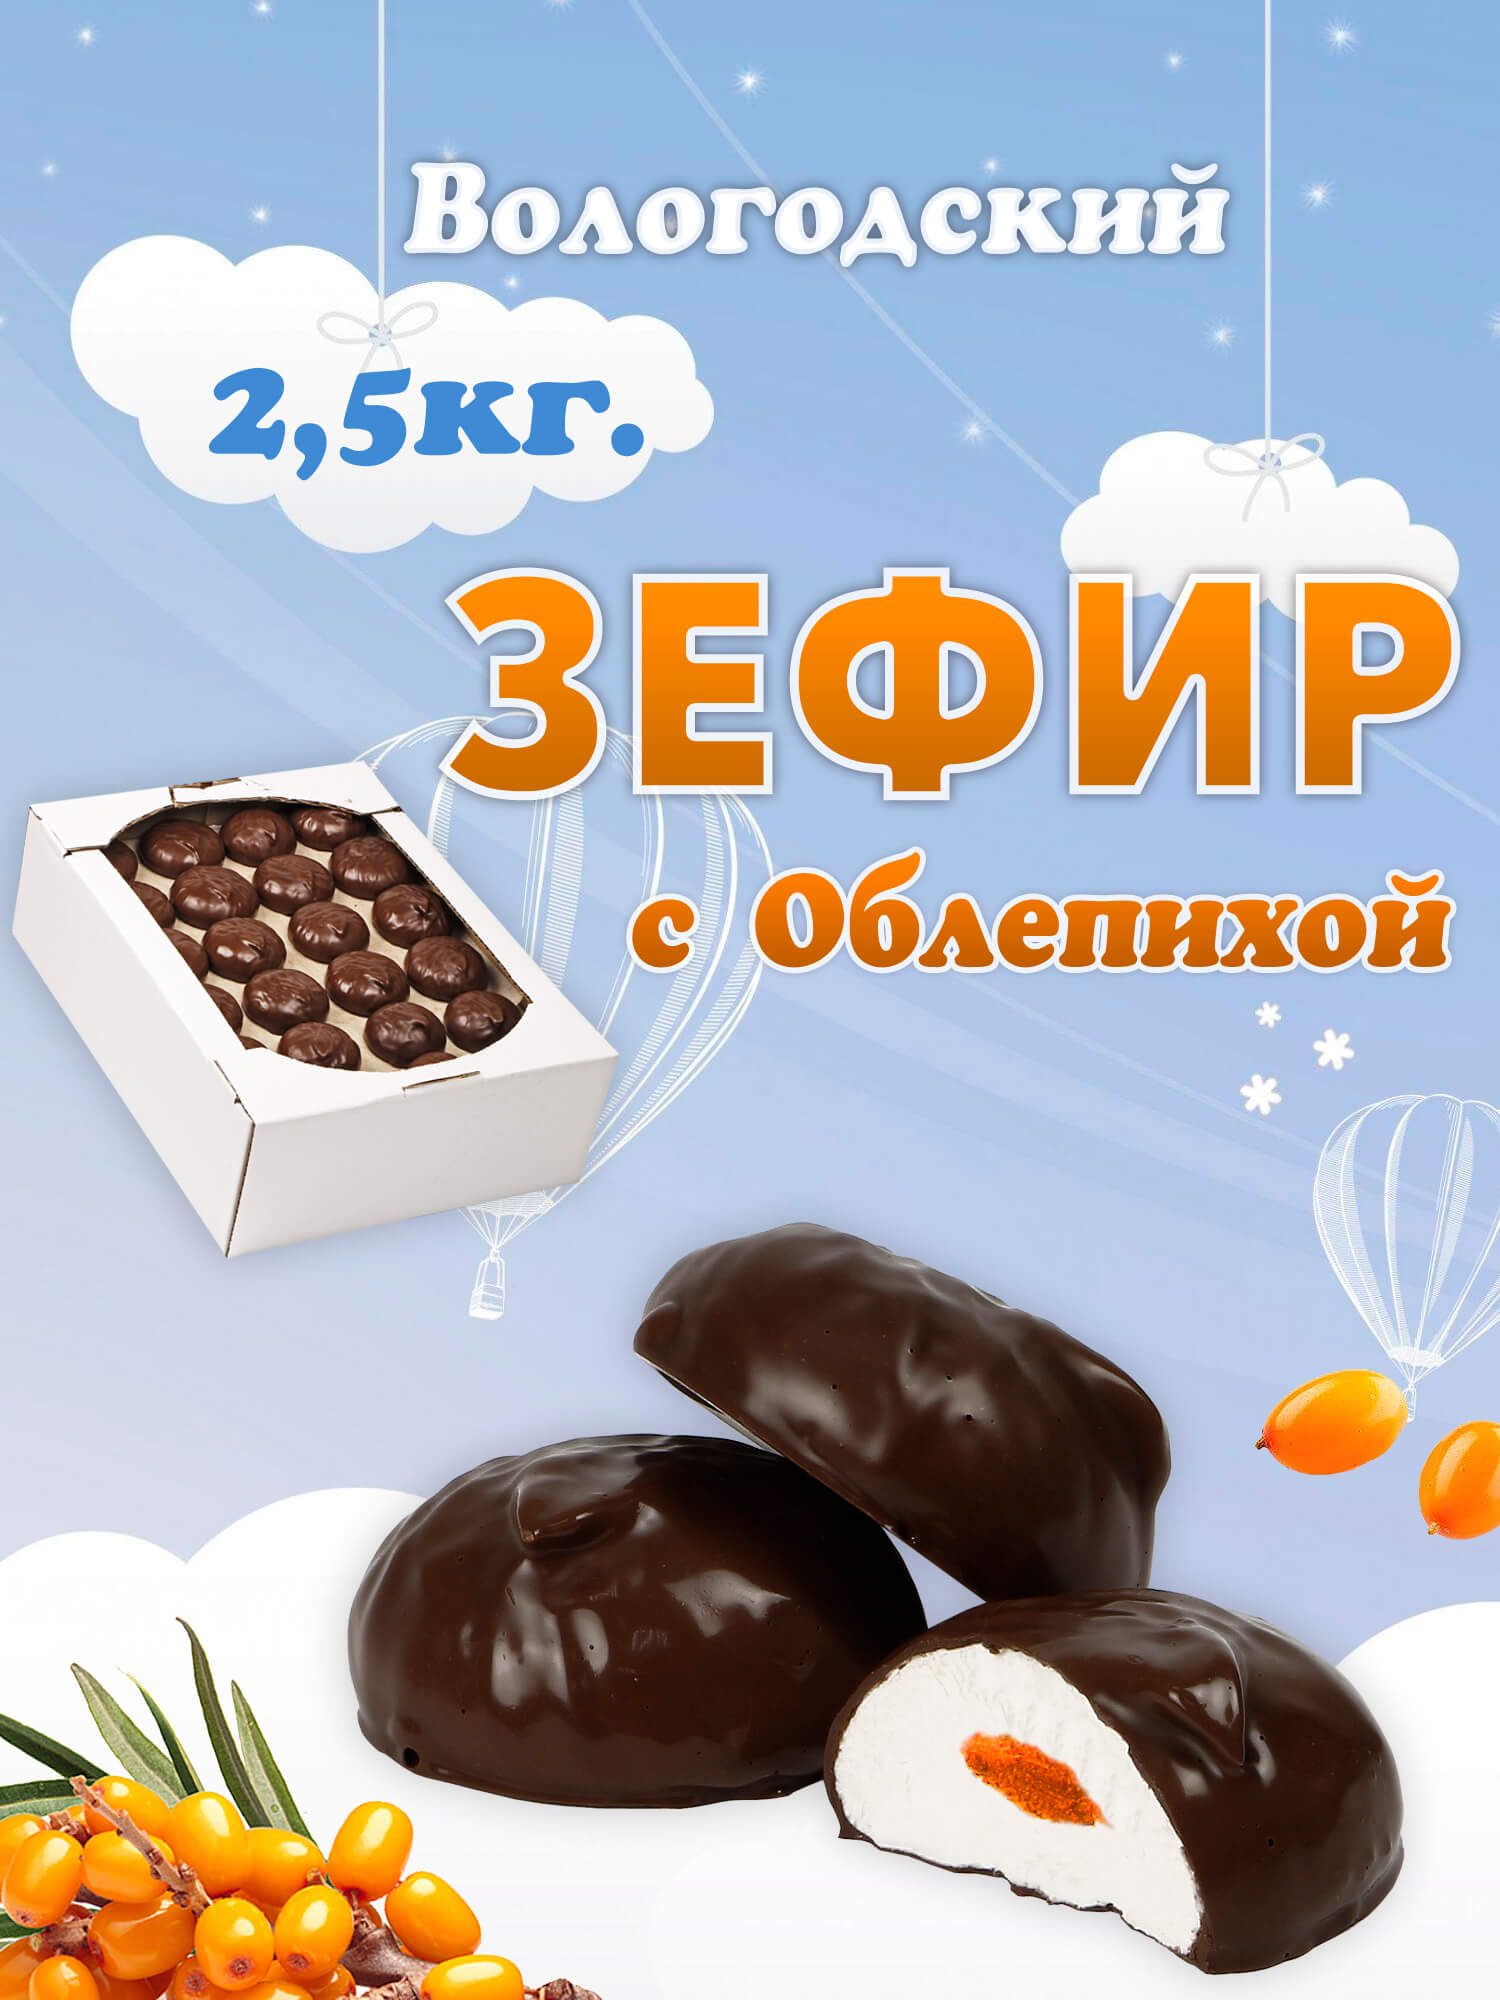 Зефир Вологодский в шоколаде с Облепихой 2,5кг.  .jpg